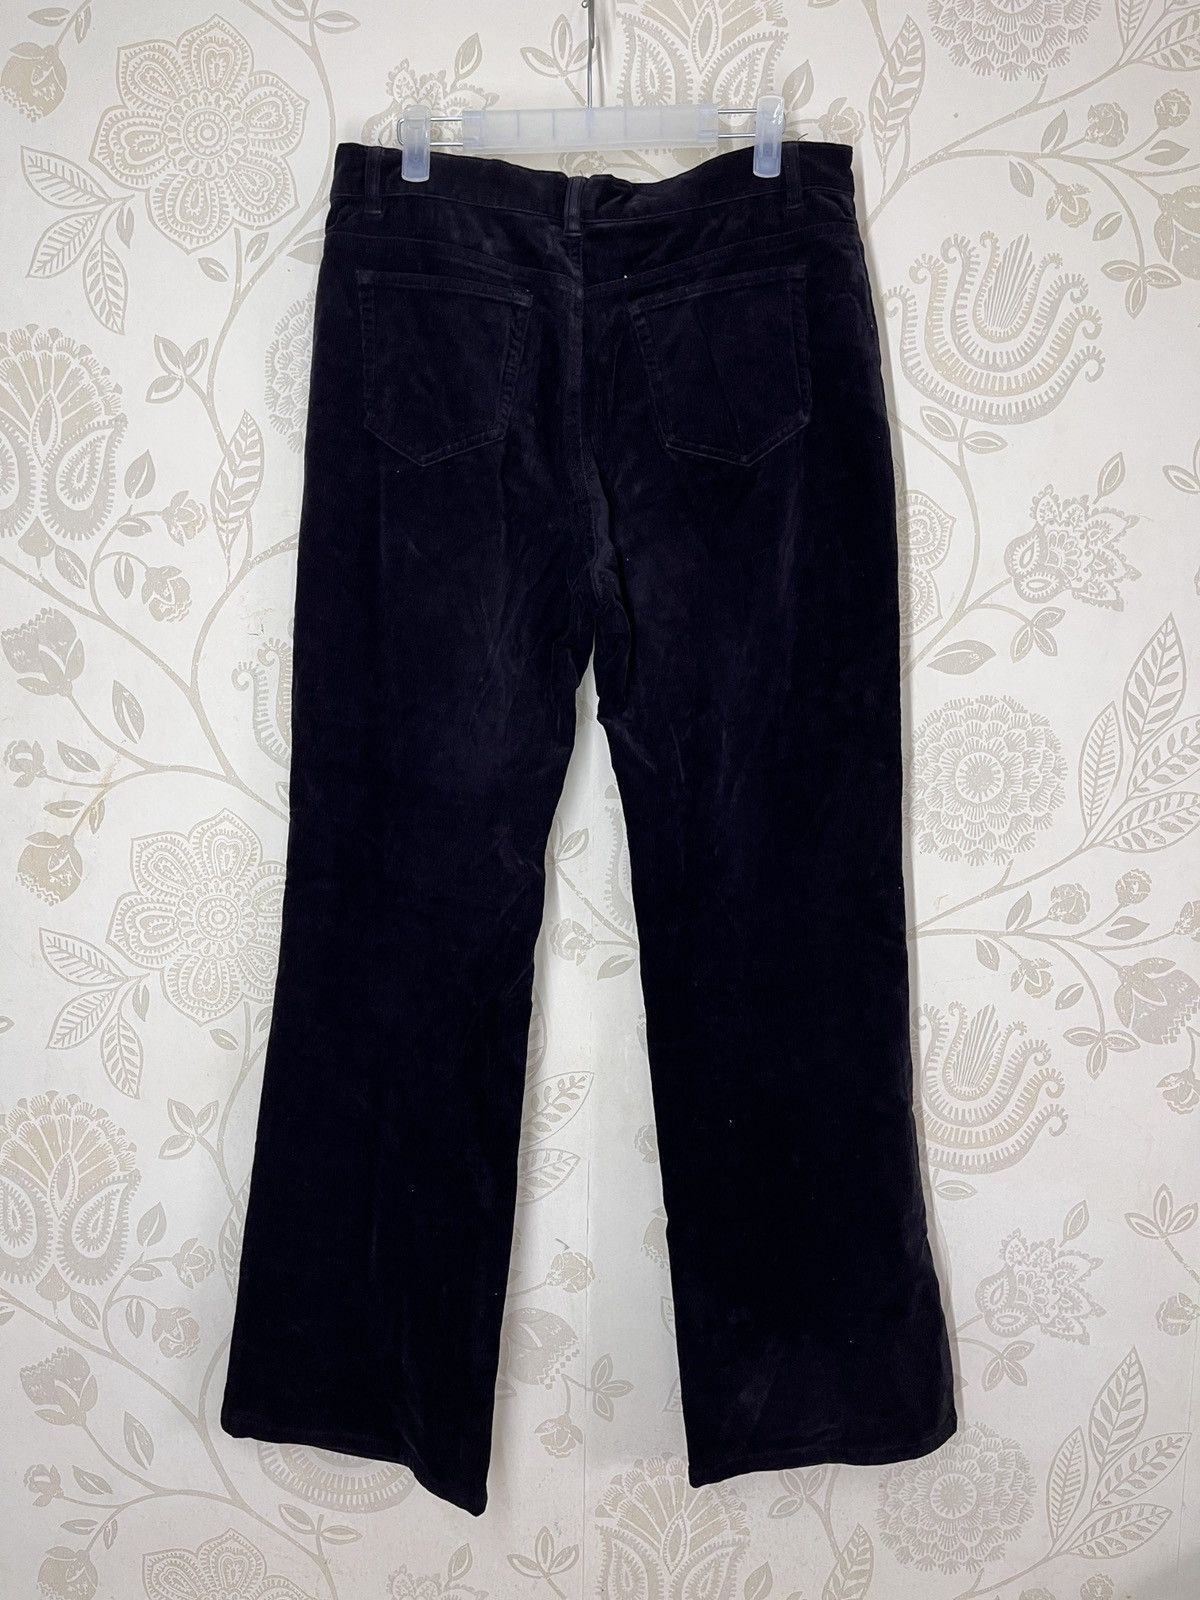 Issey Miyake - IY Basics Flare Denim Jeans Boot Cut Japanese - 2